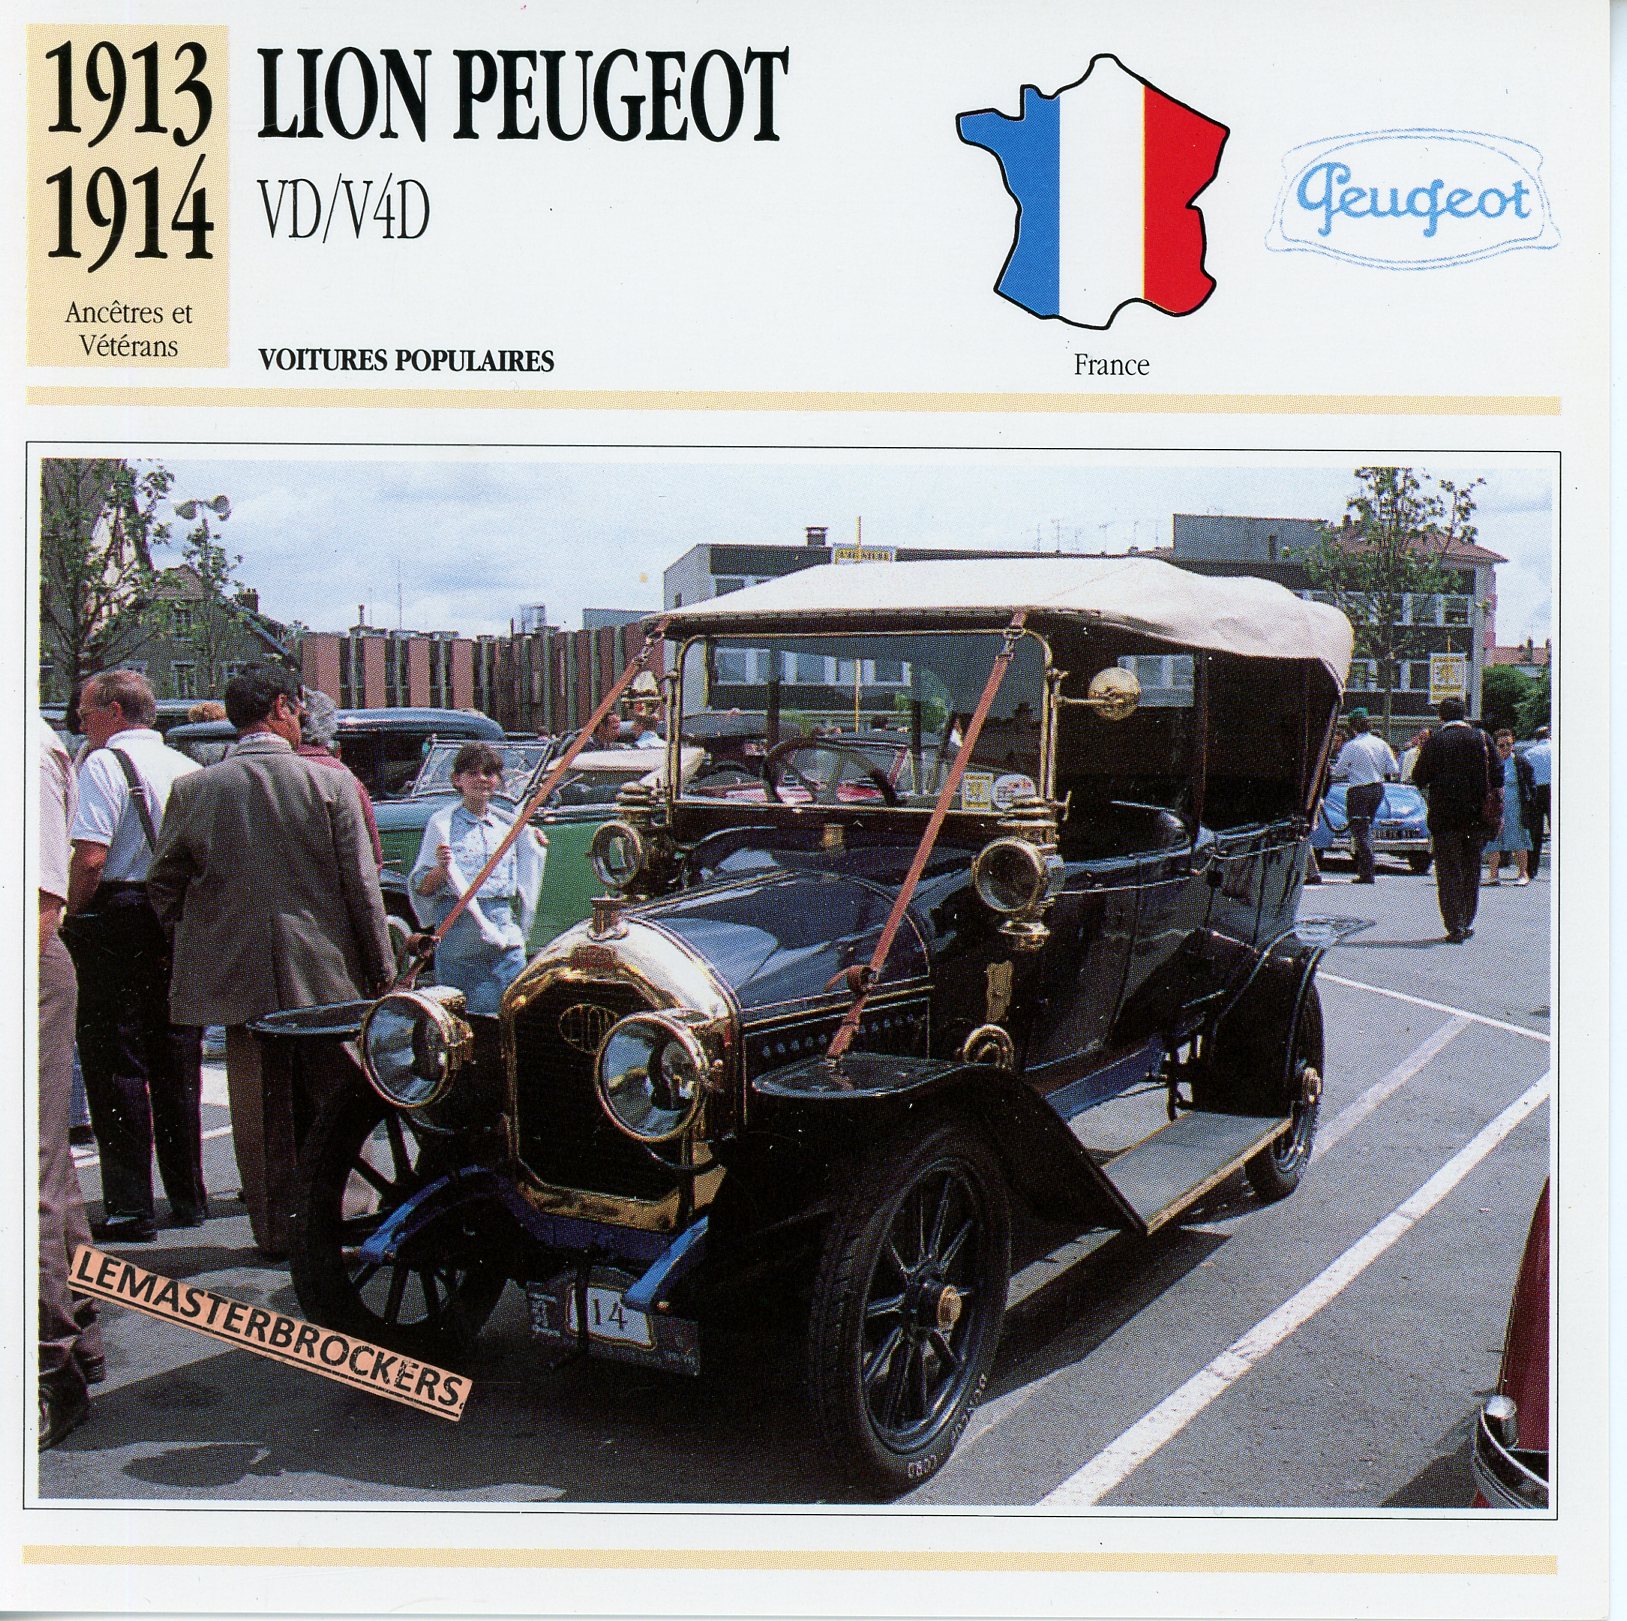 PEUGEOT-VD-V4D-1913-1914-FICHE-AUTO-ATLAS-LEMASTERBROCKERS